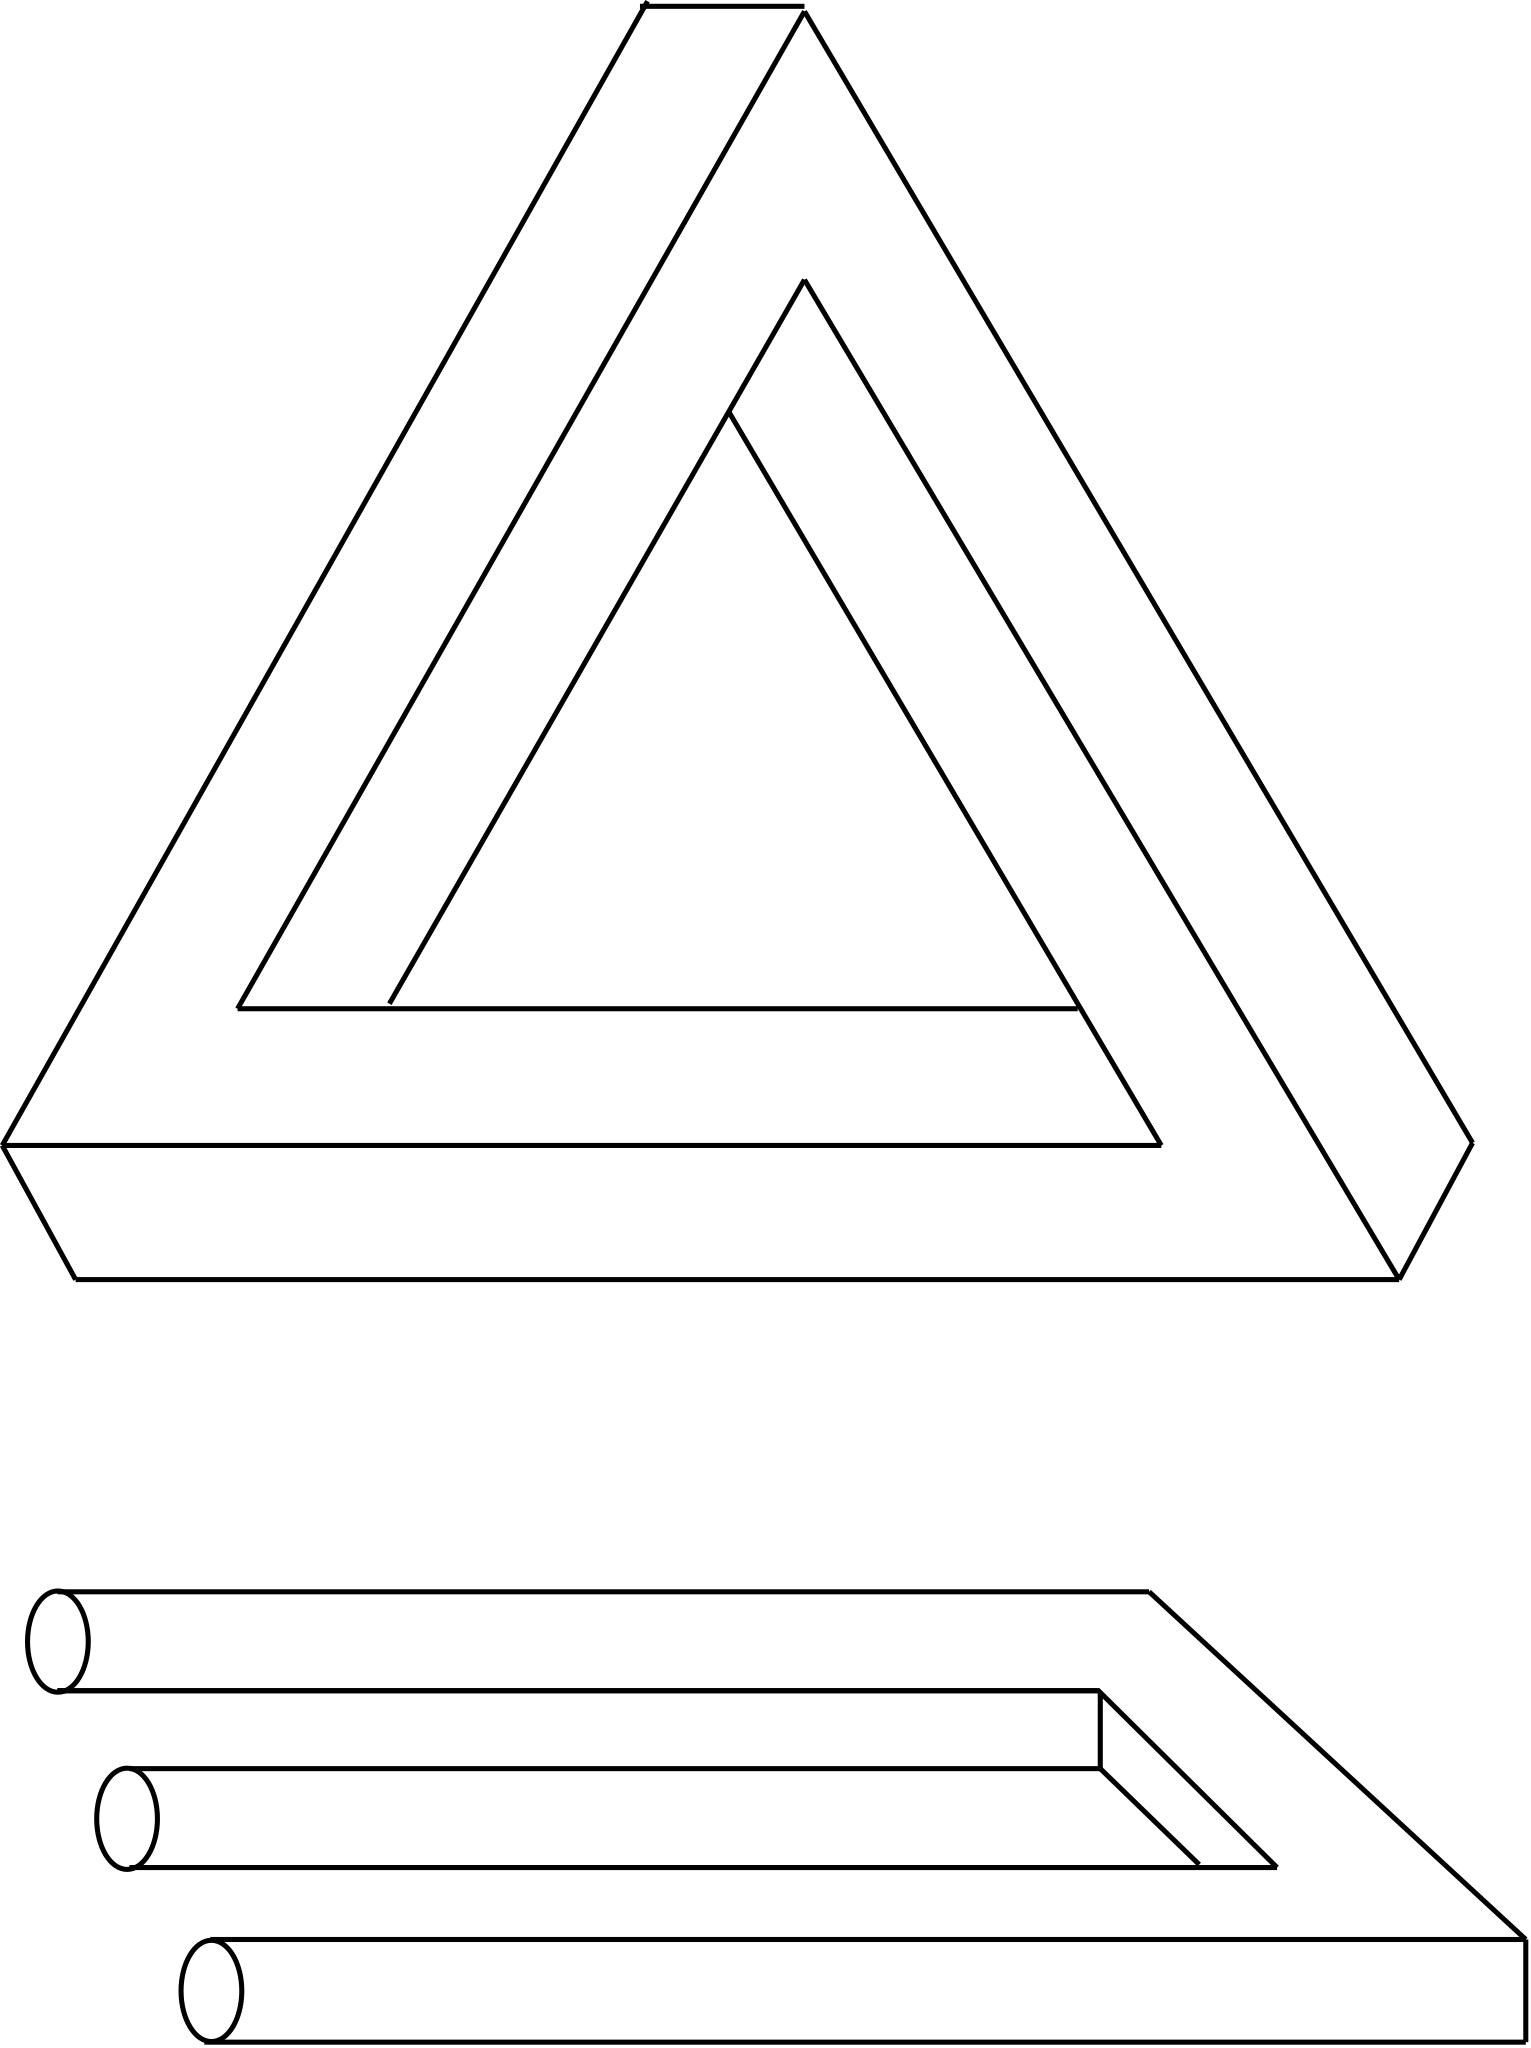 Оптические иллюзии треугольник Пенроуза